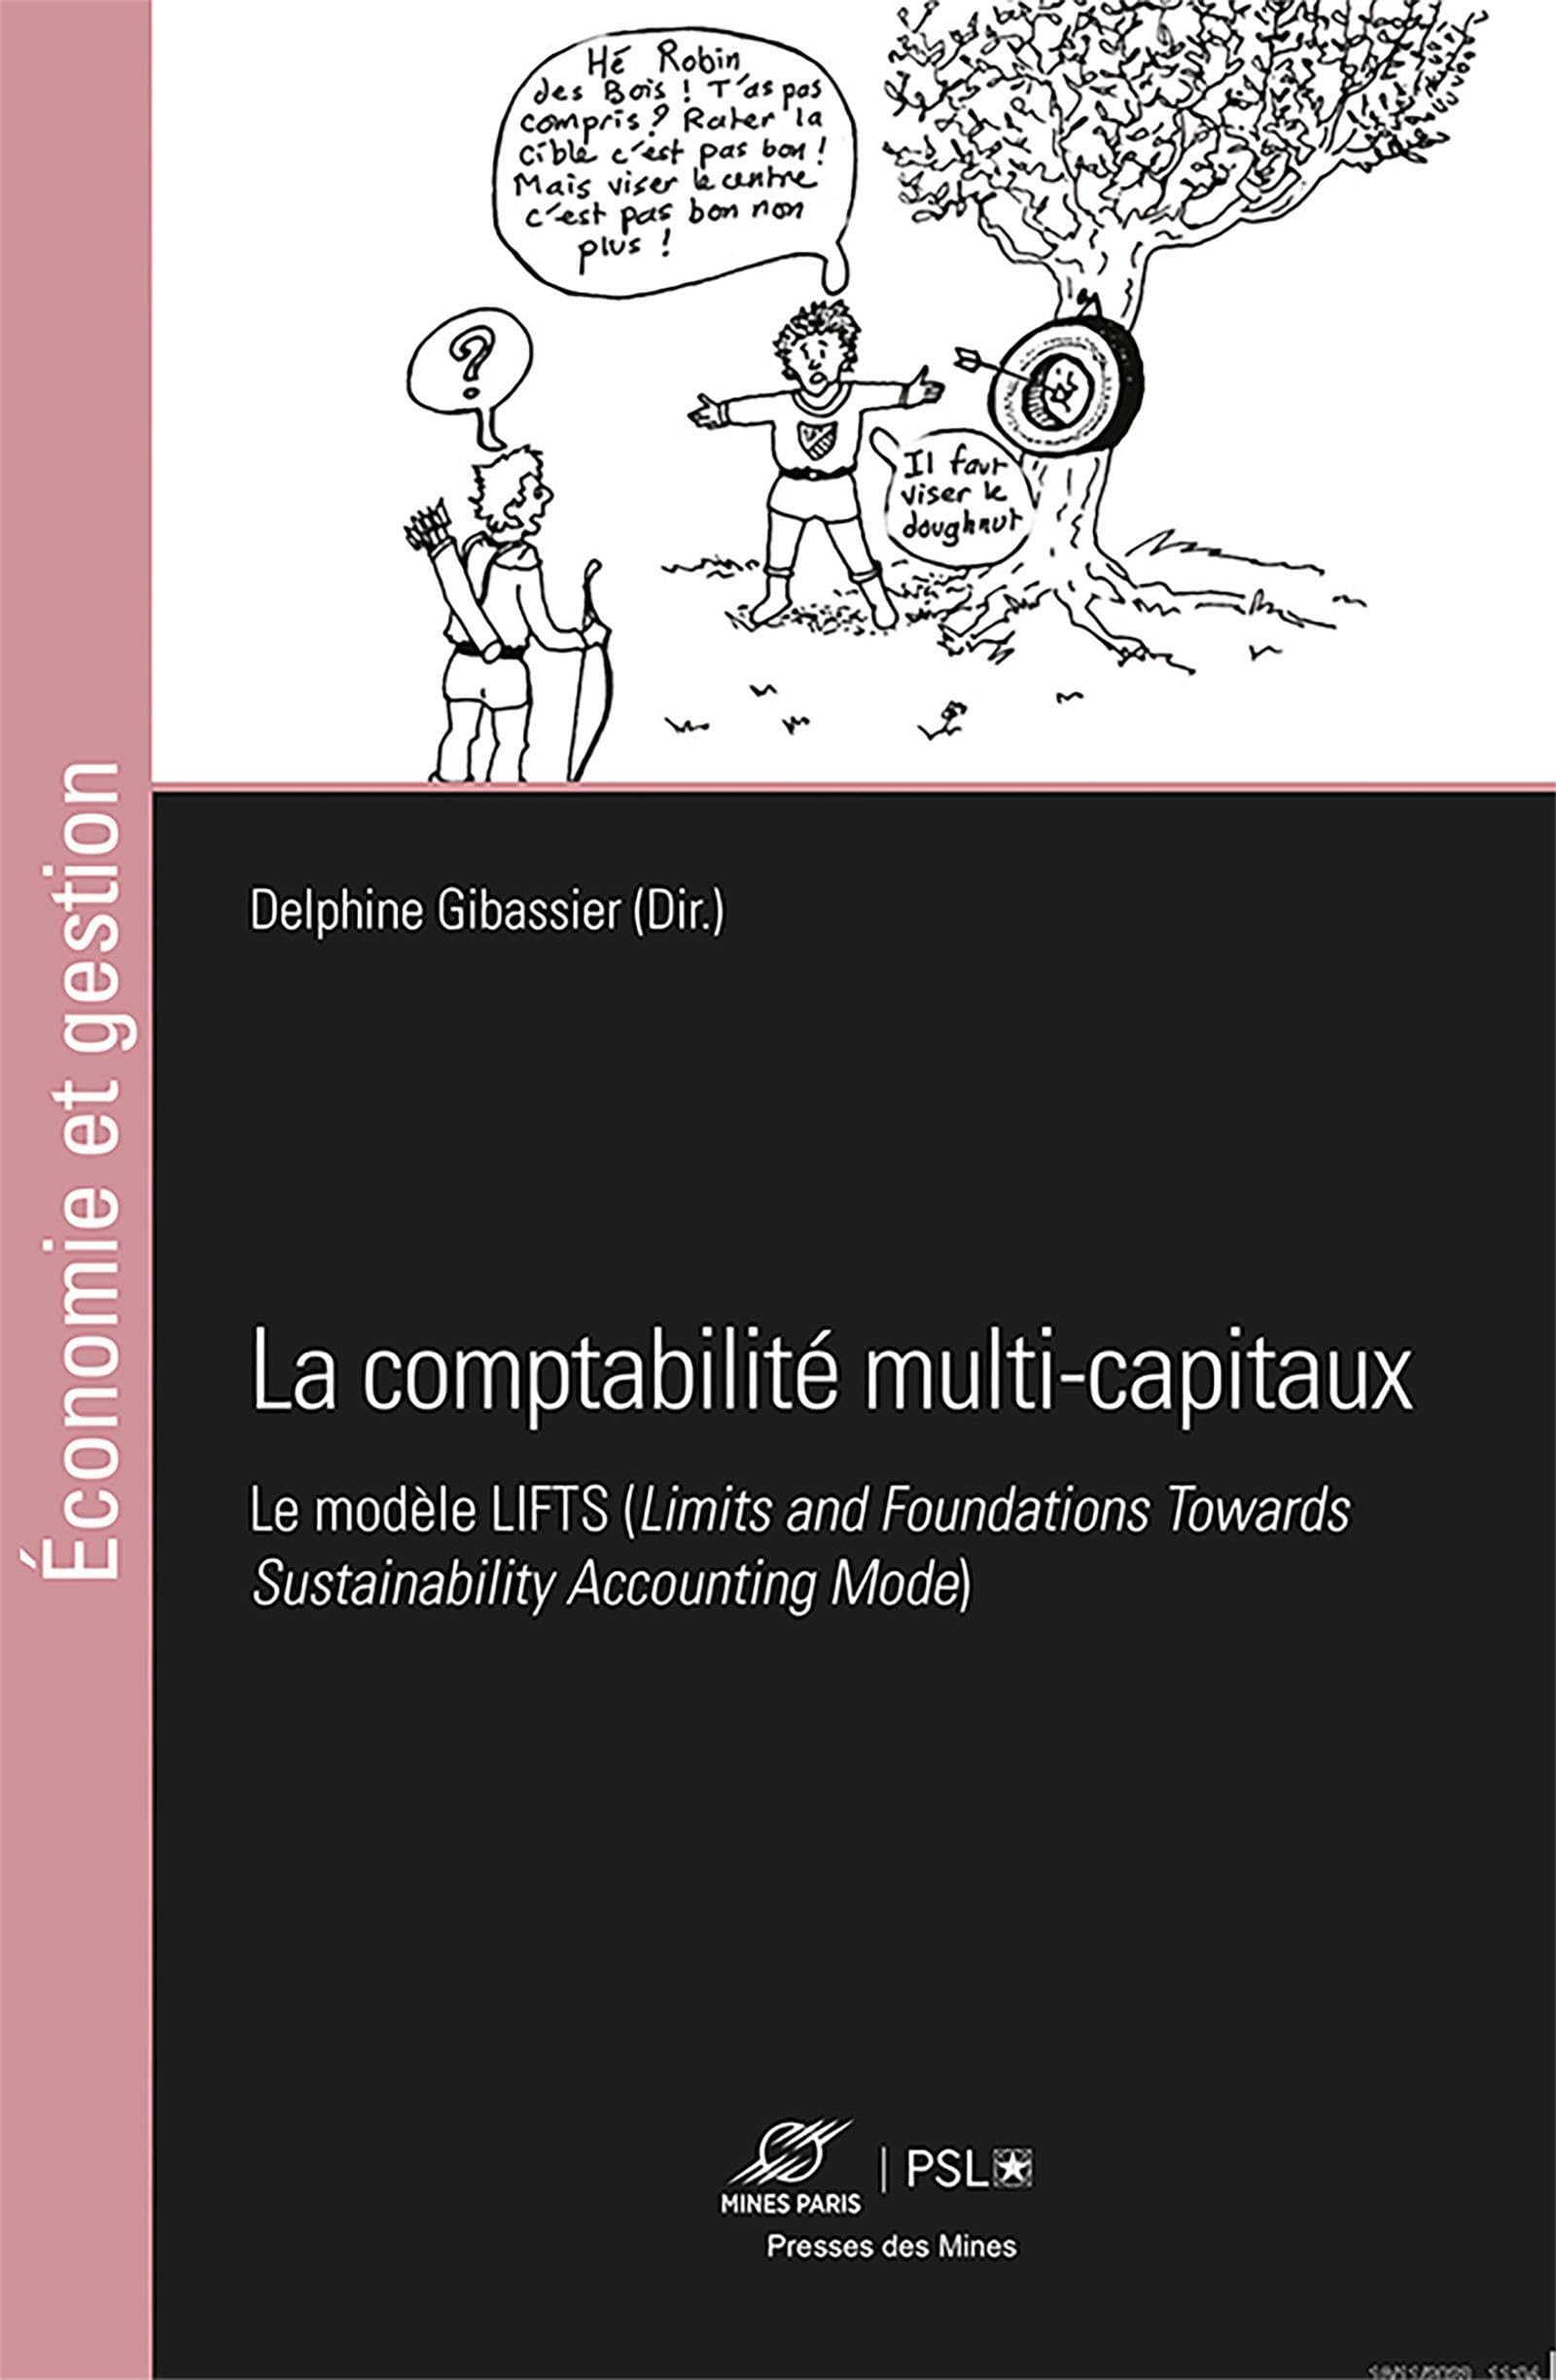 La comptabilité multi-capitaux: Le modèle LIFTS (Limits and Foundations Towards Sustainability Accou